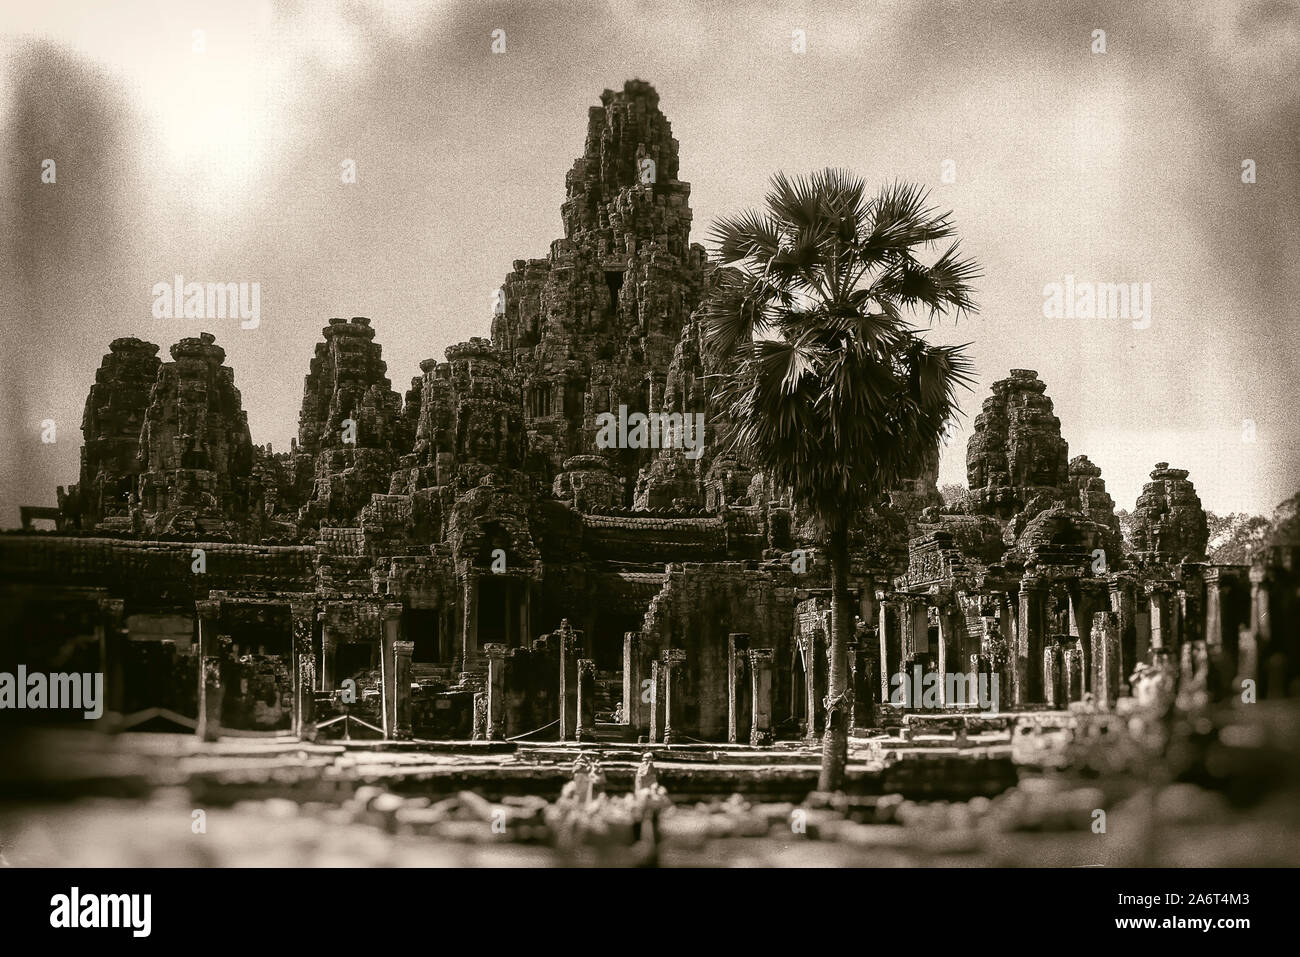 Cambogia Angkor, tempio Bayon: il tempio Bayon. La foto è stata elaborata in post-produzione con una lastra fotografica effetto Foto Stock